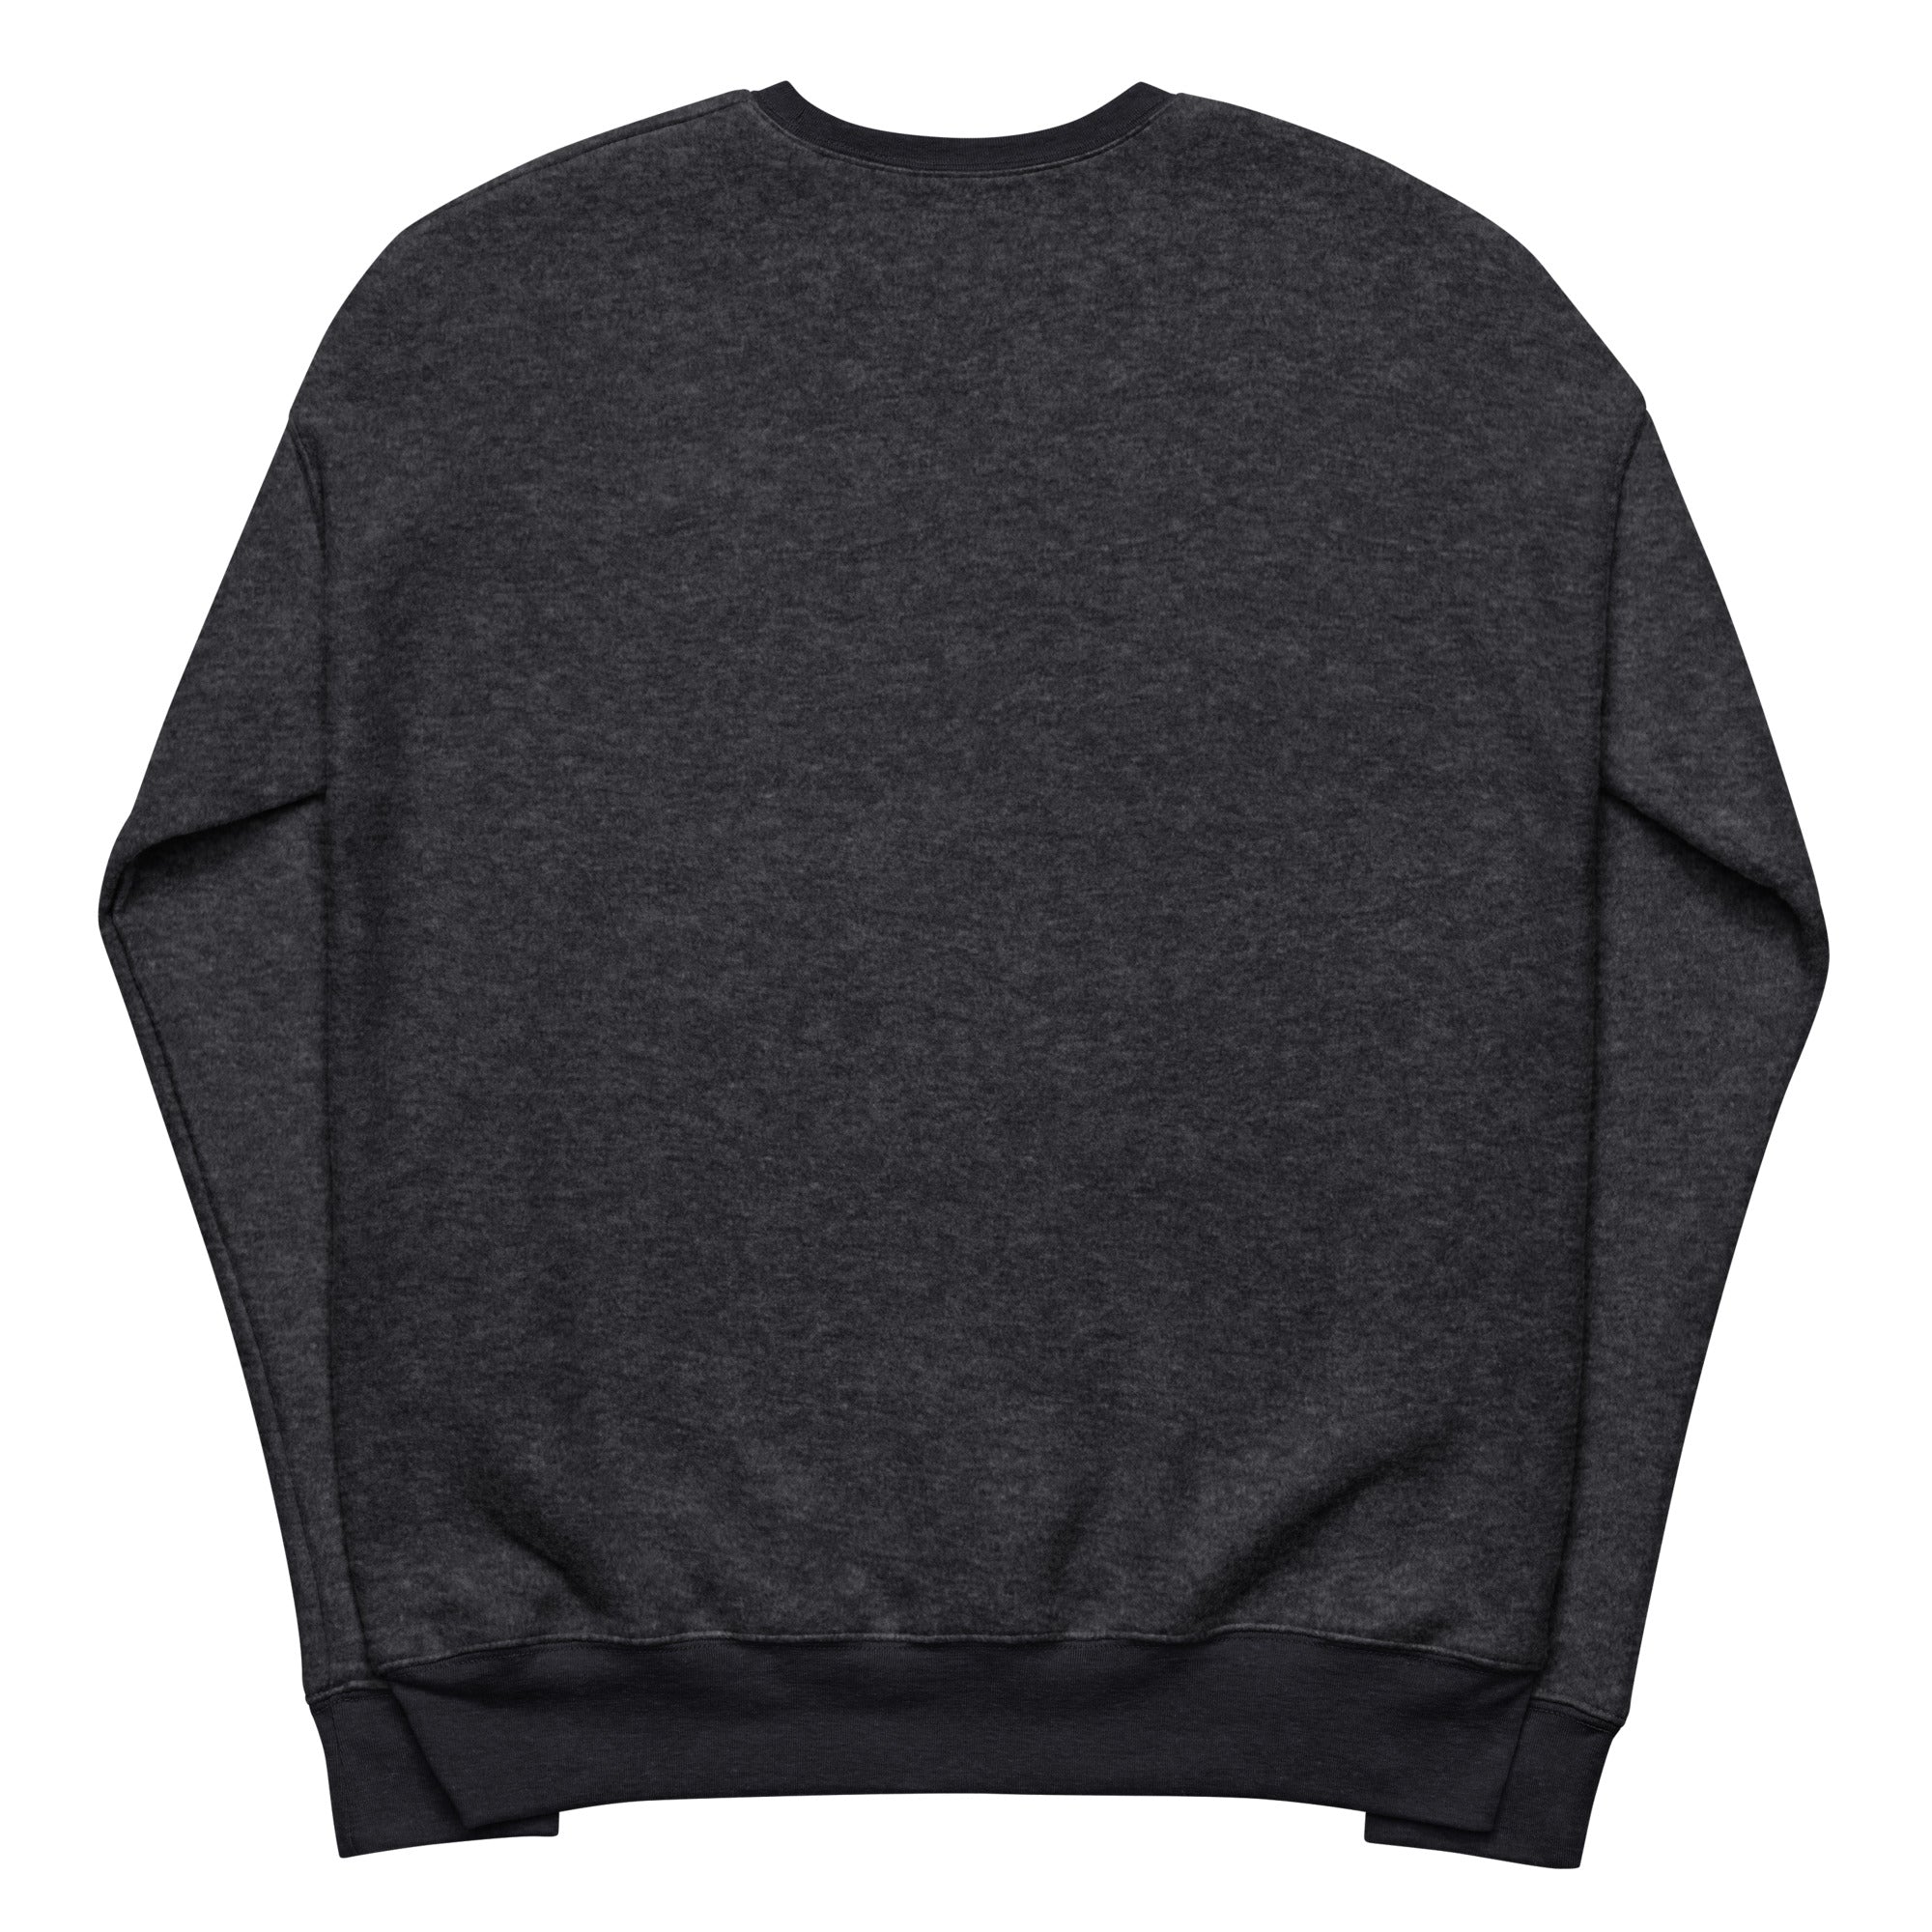 Poogan's Porch Unisex Fleece Sweatshirt (Assorted Colors)